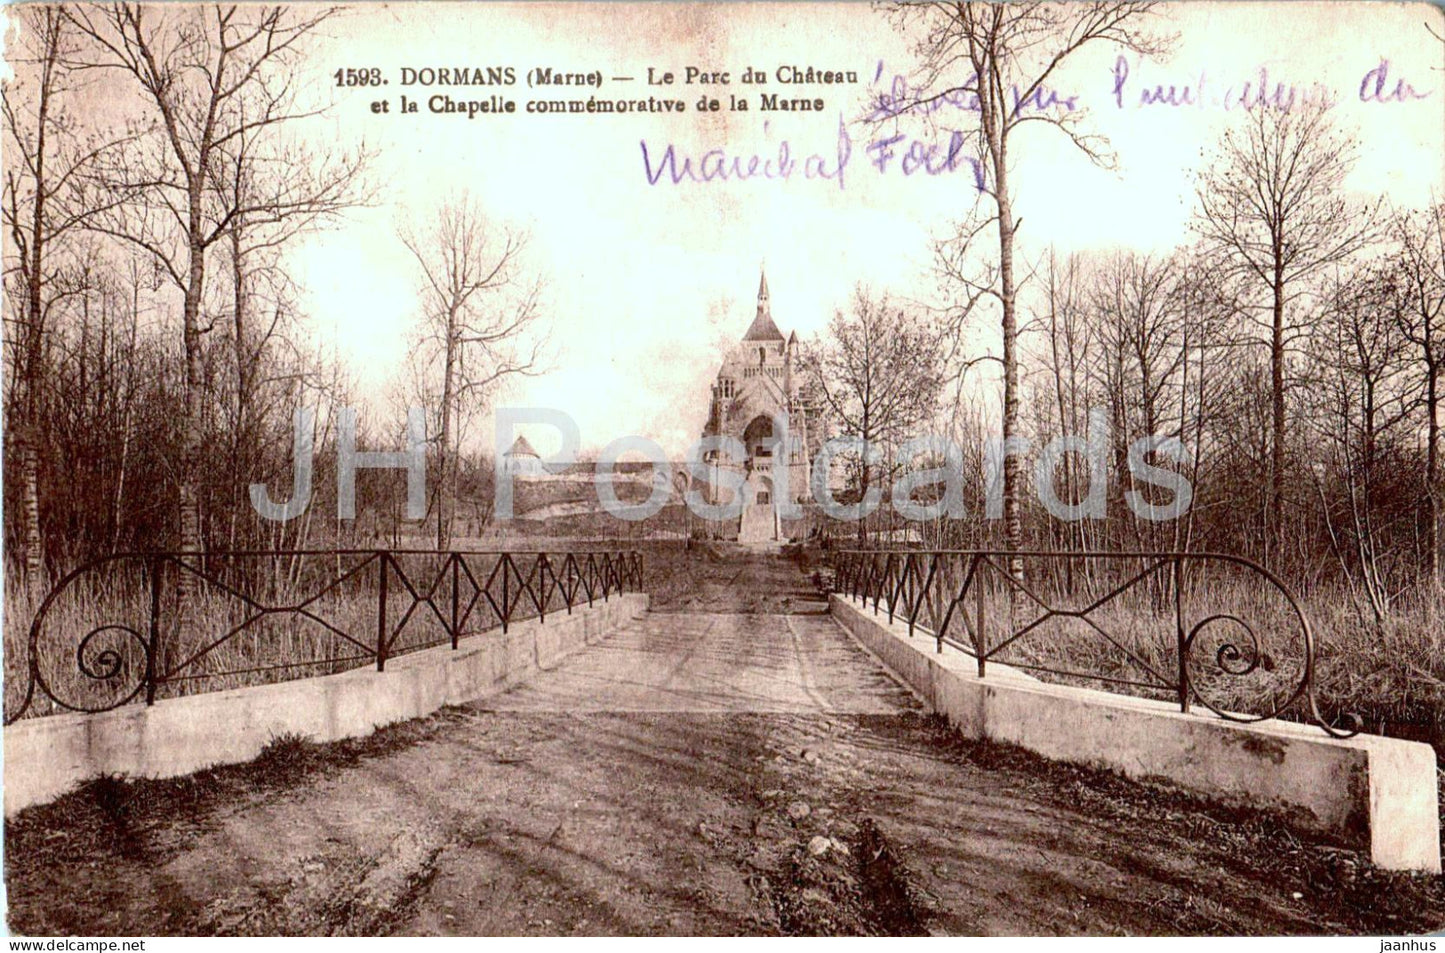 Dormans - Le Parc du Chateau et la Chapelle commemorative de la Marne - castle park 1593 - old postcard - France - used - JH Postcards